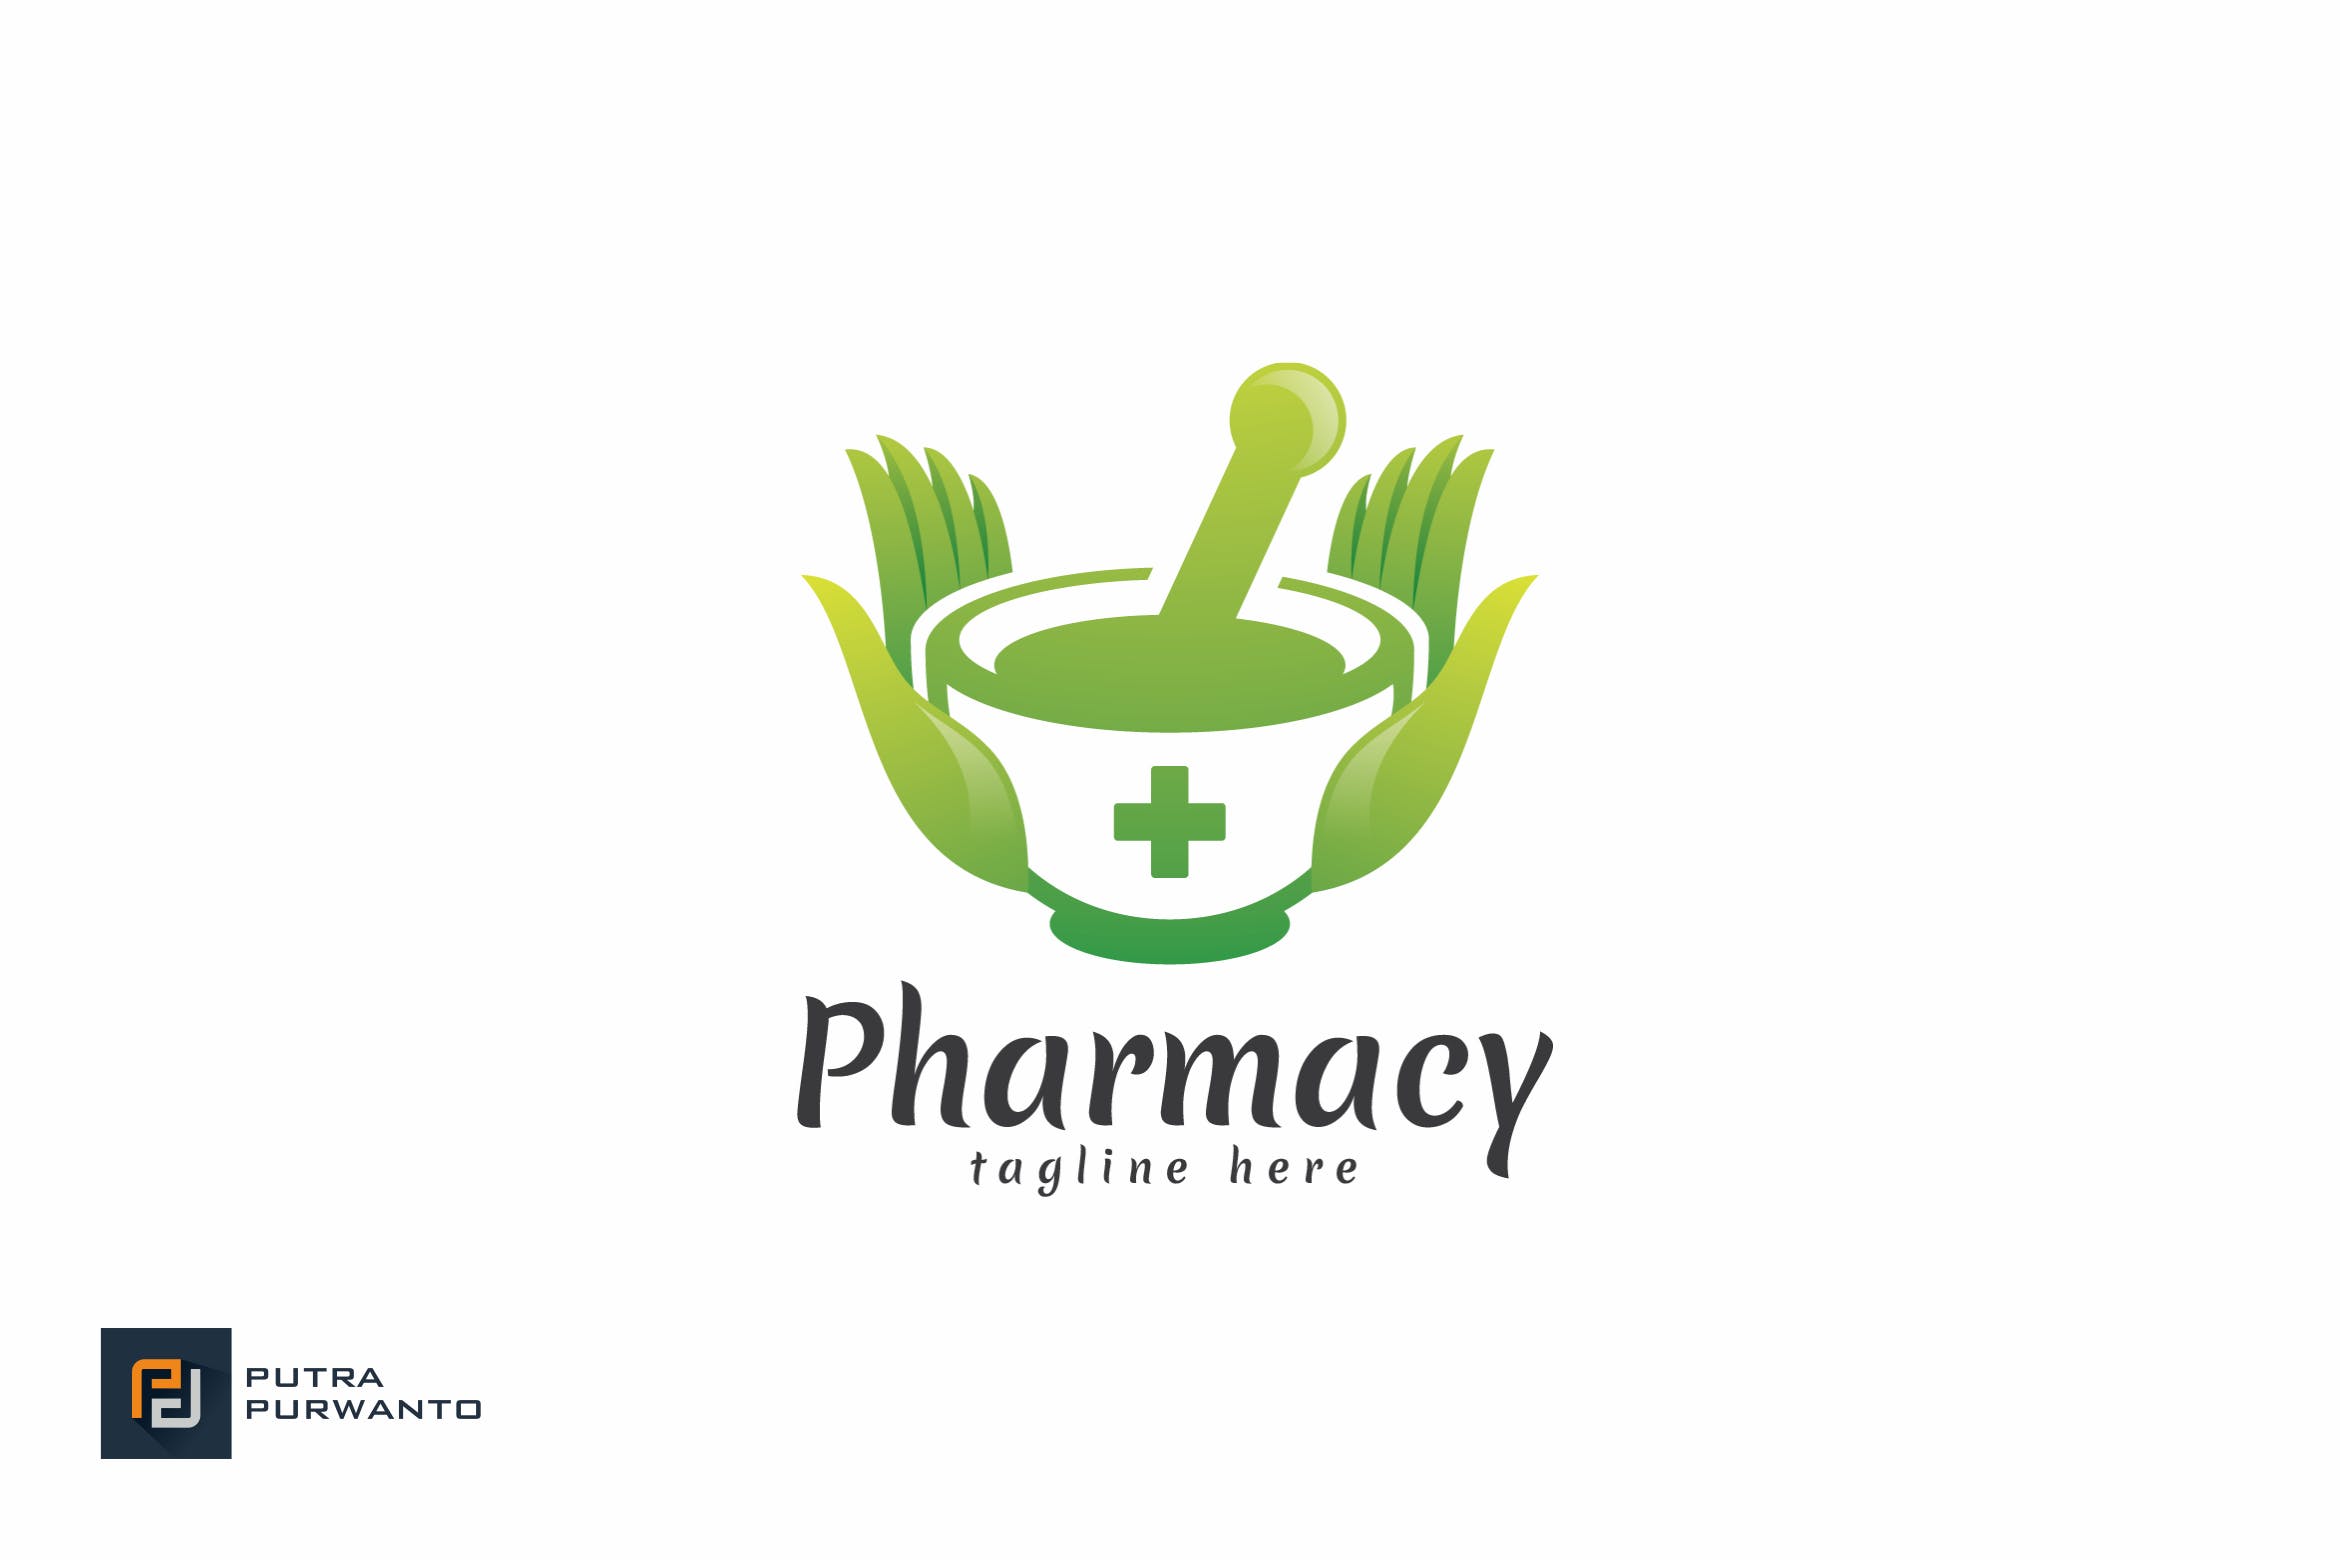 药房商标品牌Logo设计素材库精选模板 Pharmacy – Logo Template插图